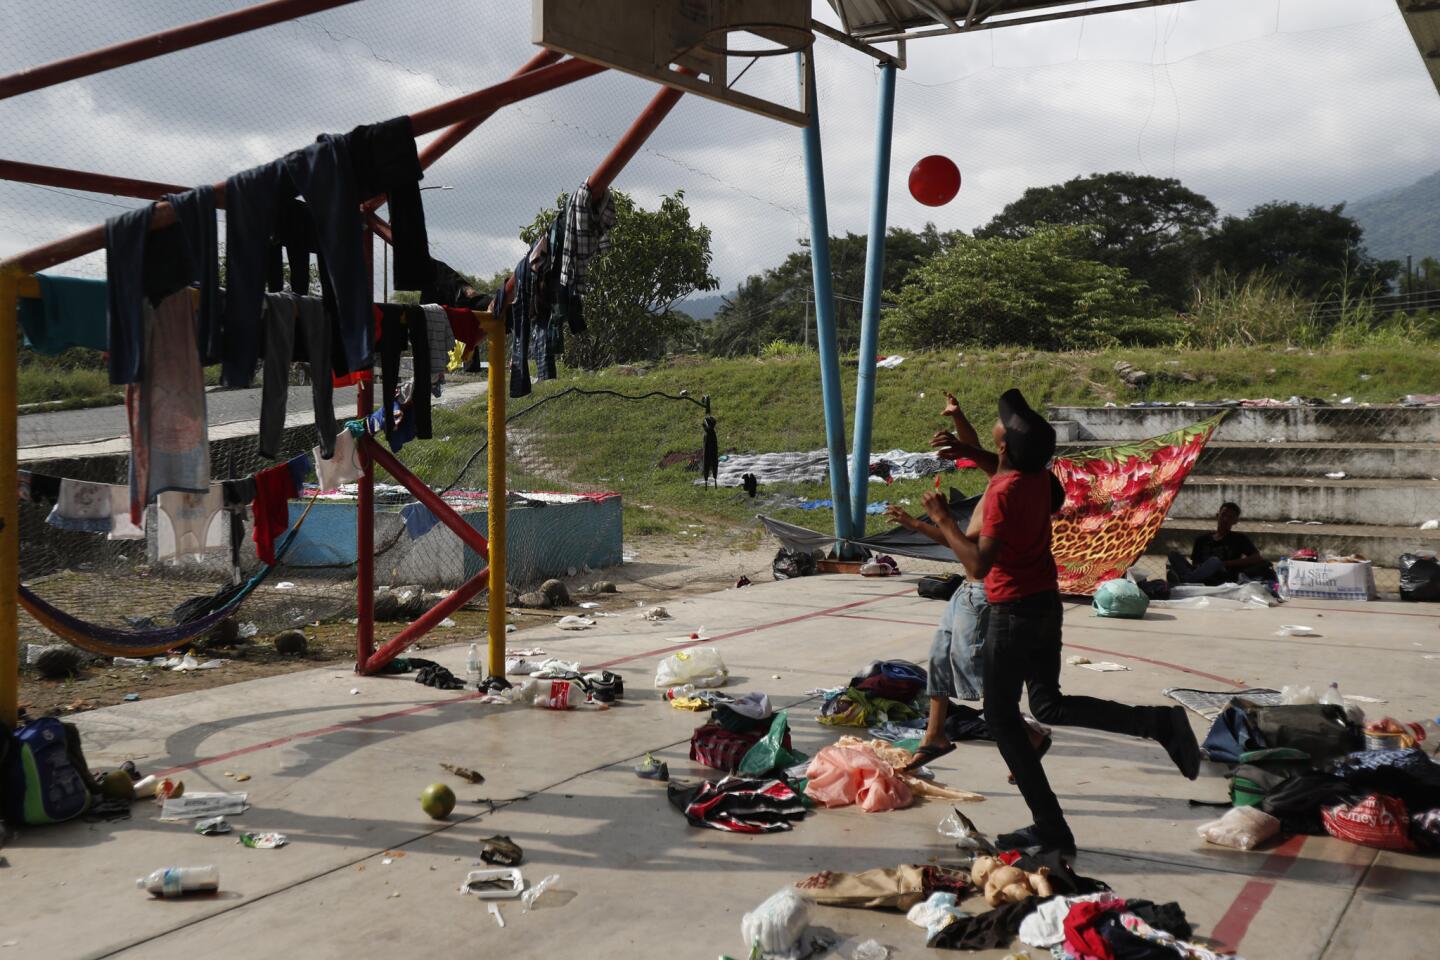 Migrant caravan continues through Mexico